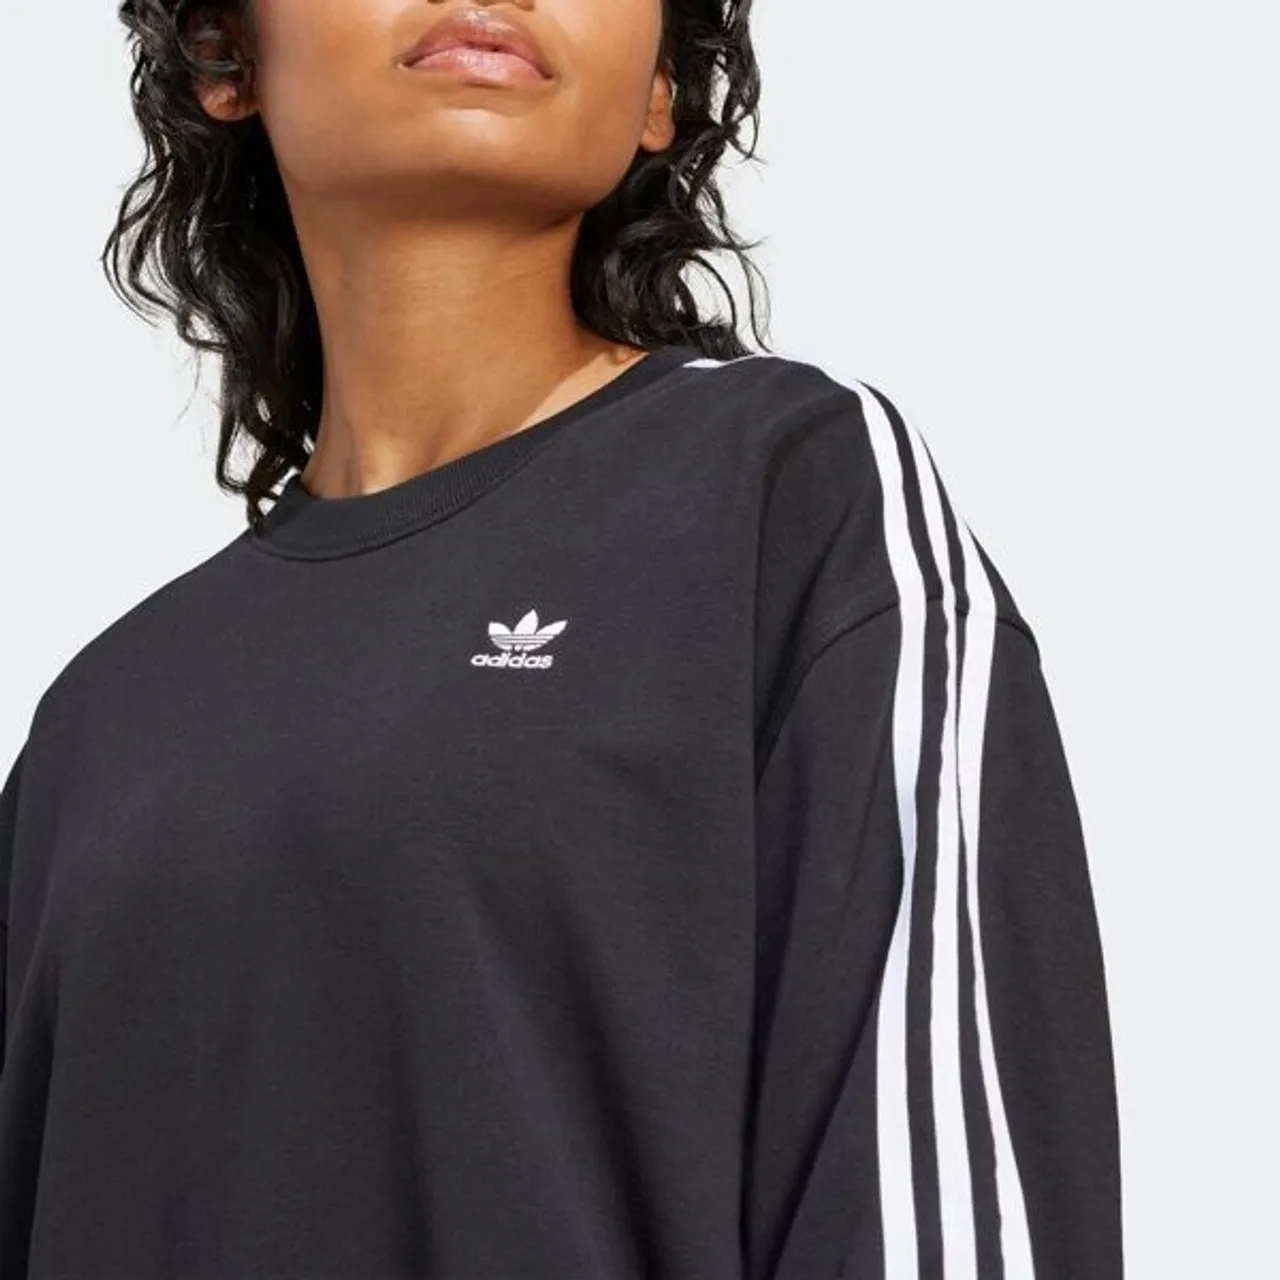 Sweatshirt ADIDAS ORIGINALS "3 S CREW OS" Gr. XL, schwarz (black) Damen Sweatshirts Oversize Shirts